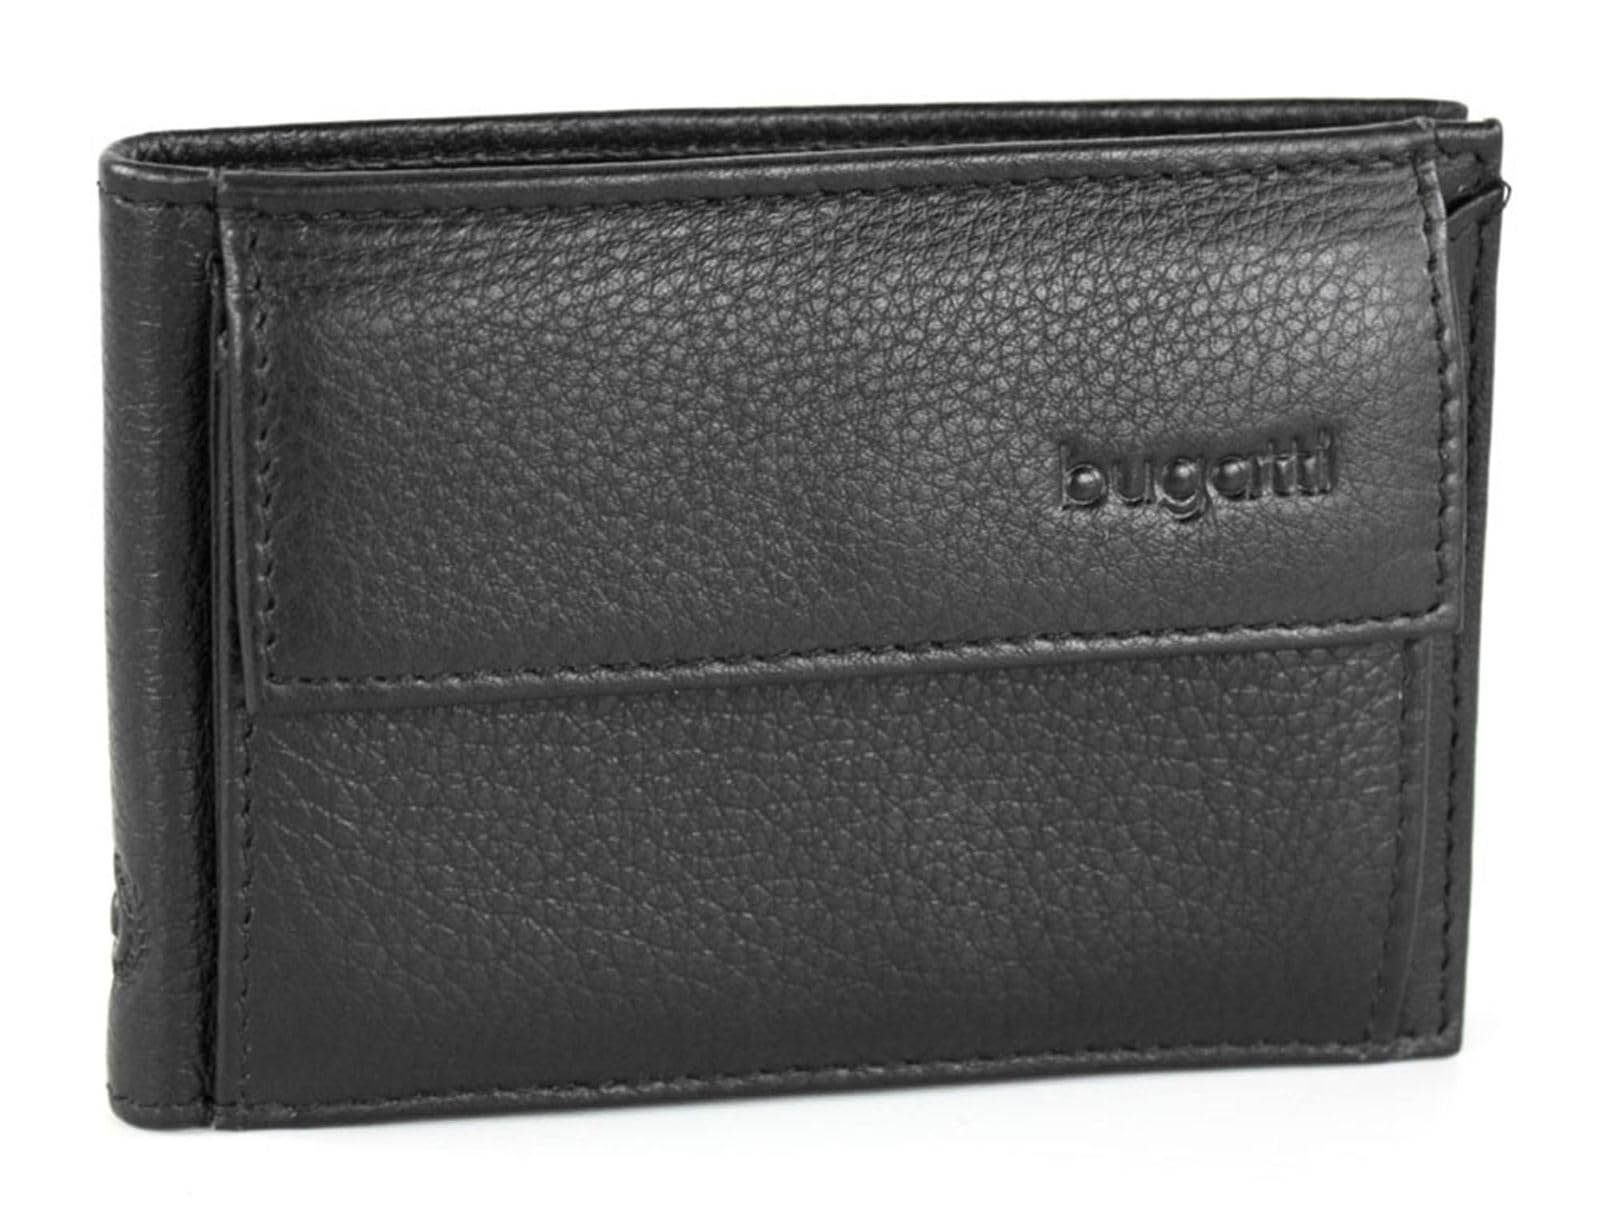 Bugatti Sempre Geldbörse mit Münzfach, 10 cm, schwarz